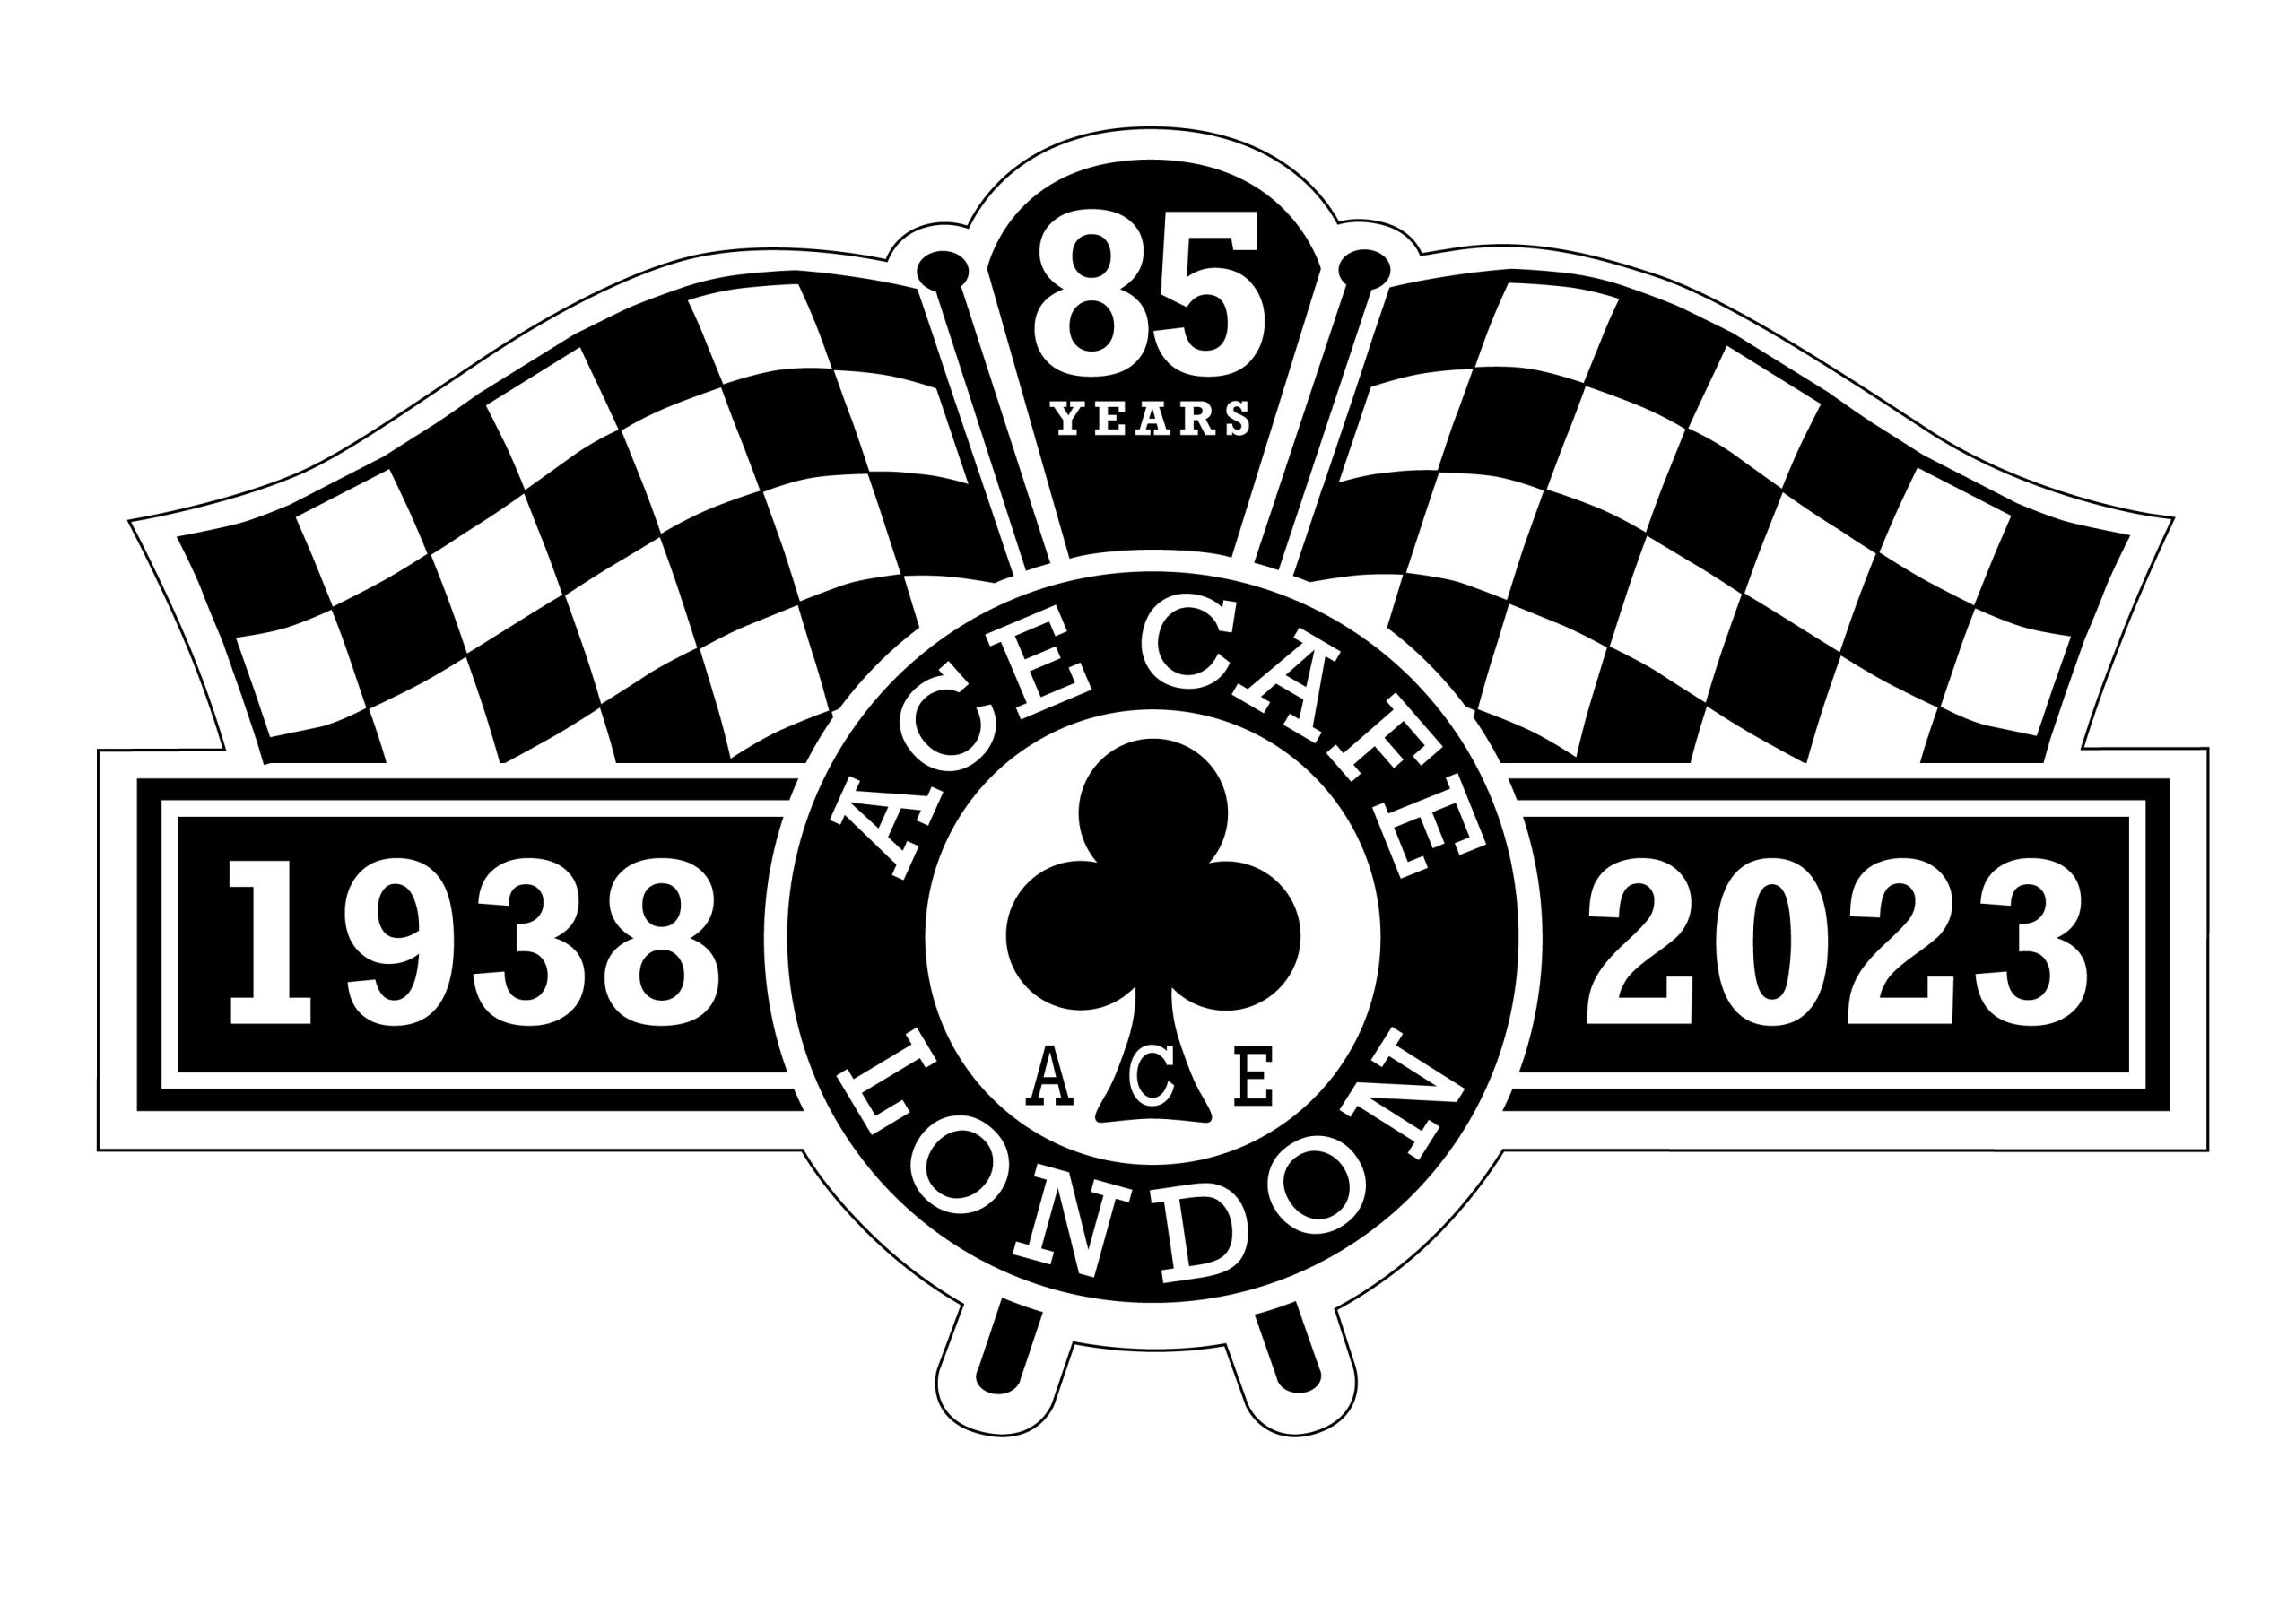 1938 - 2023 Anniversary